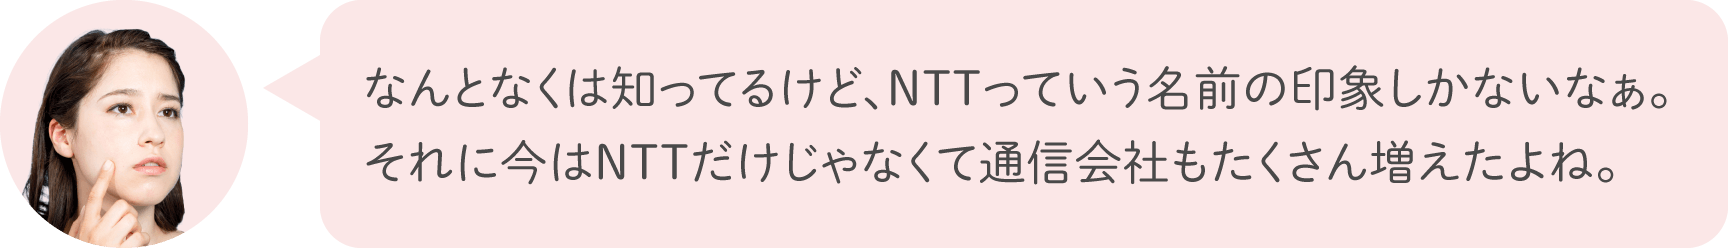 なんとなくは知ってるけど、NTTっていう名前の印象しかないなぁ。それに今はNTTだけじゃなくて通信会社もたくさん増えたよね。